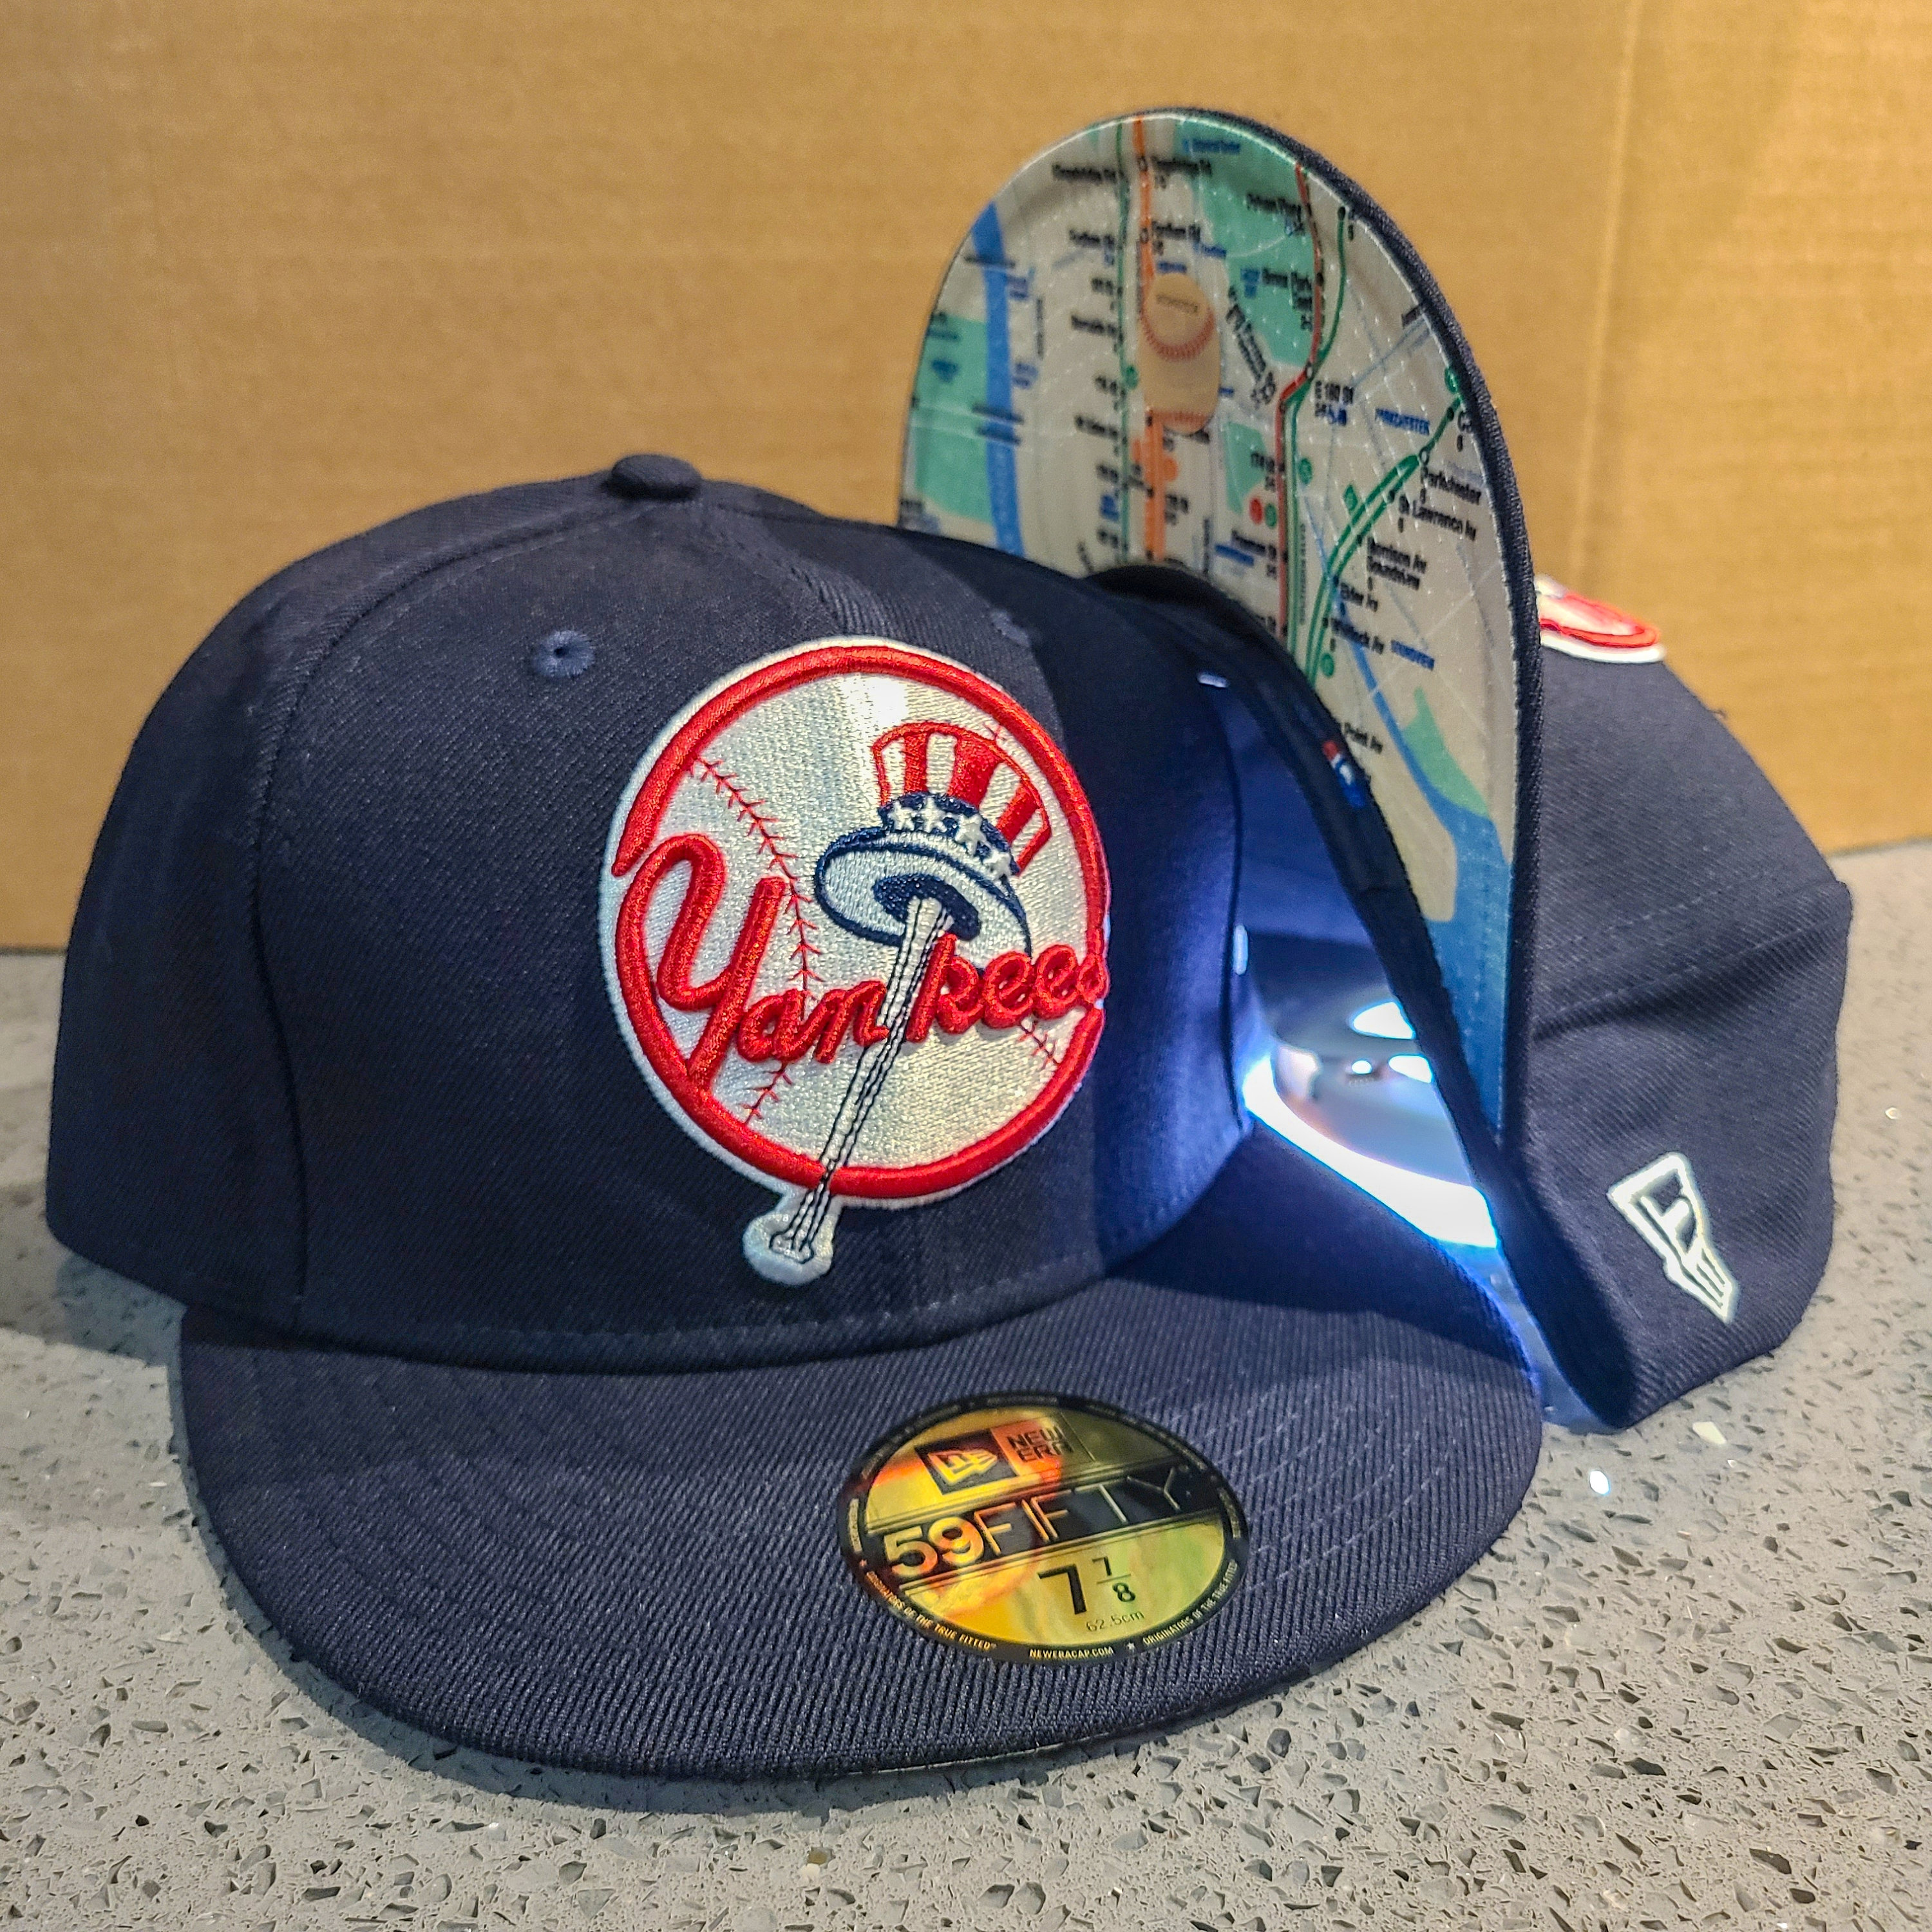 New Era  New Era Hats & Apparel – New Era Cap